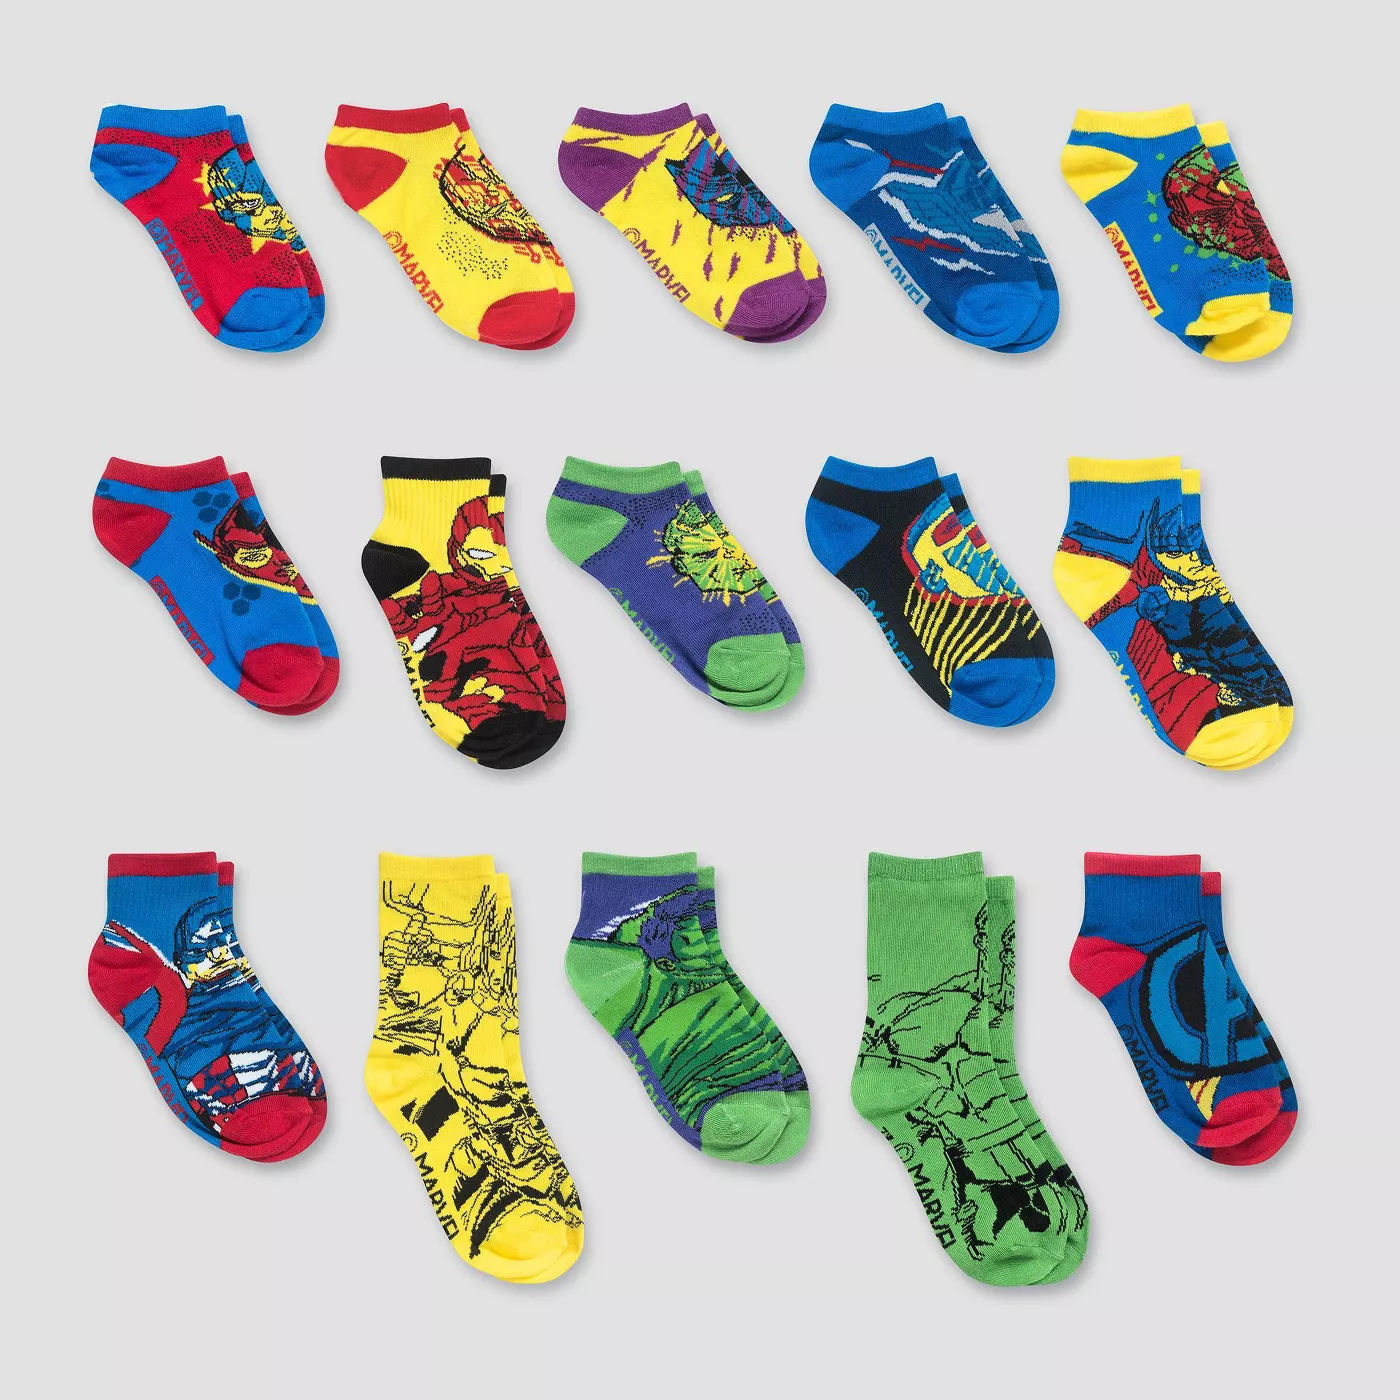 2020 Target Marvel Socks Advent Calendar Available Now